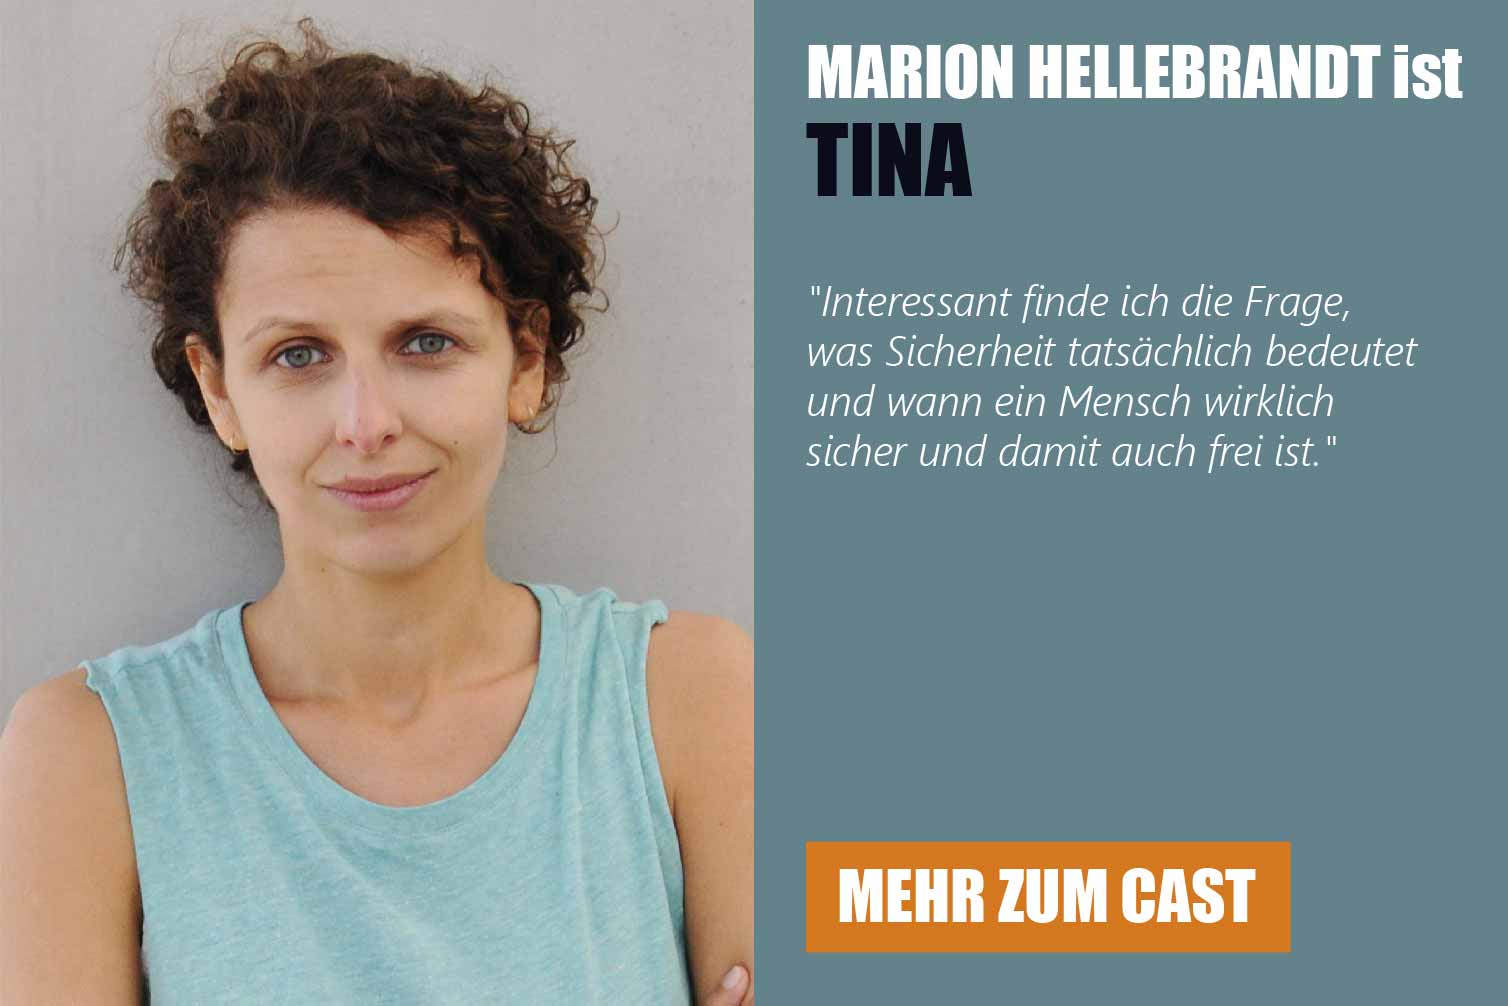 Die Schauspielerin Marion Hellebrandt ist Tina